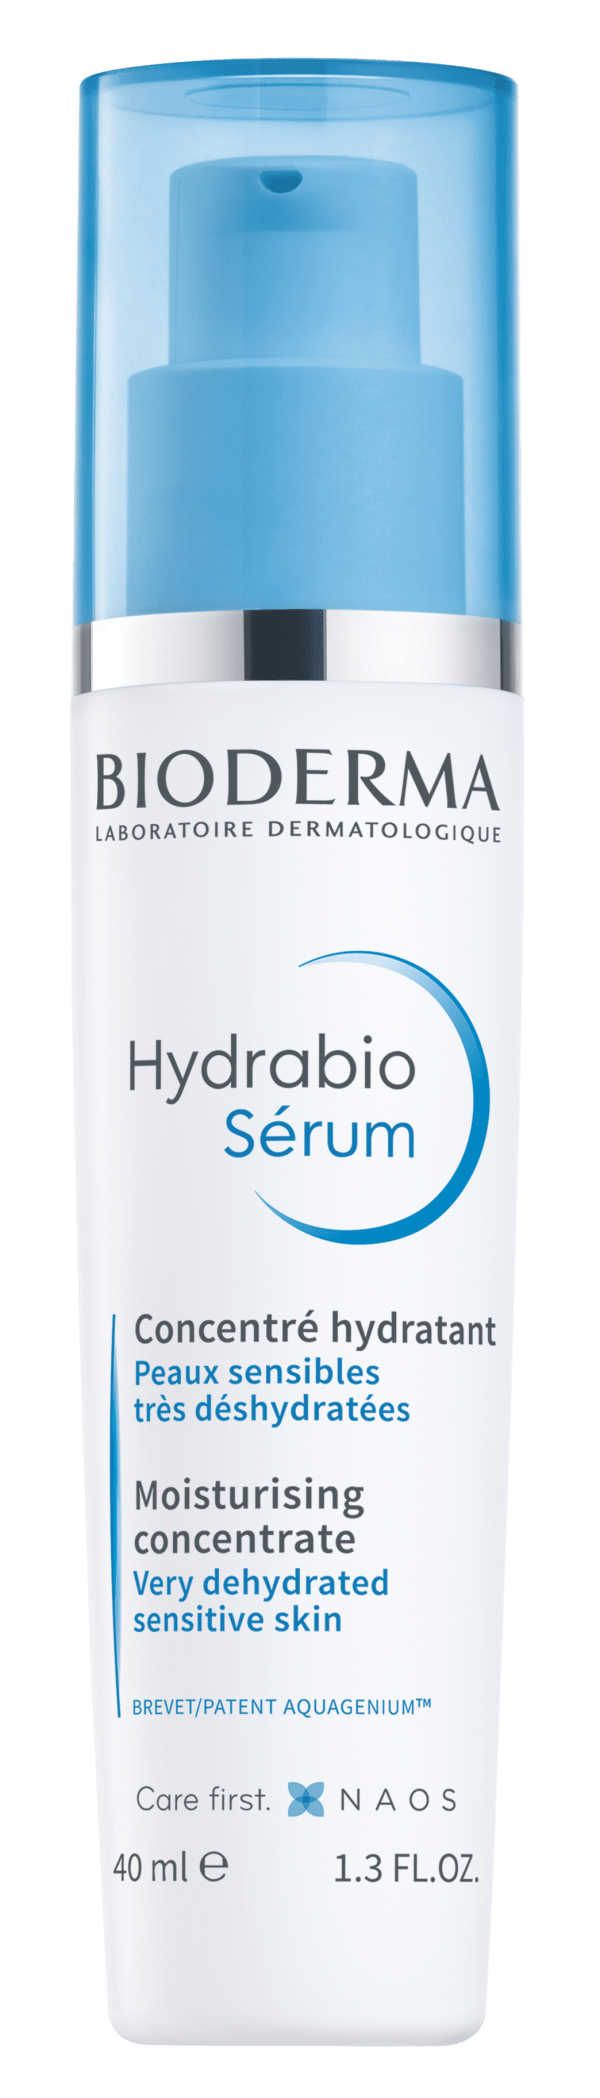 Hydrabio Serum